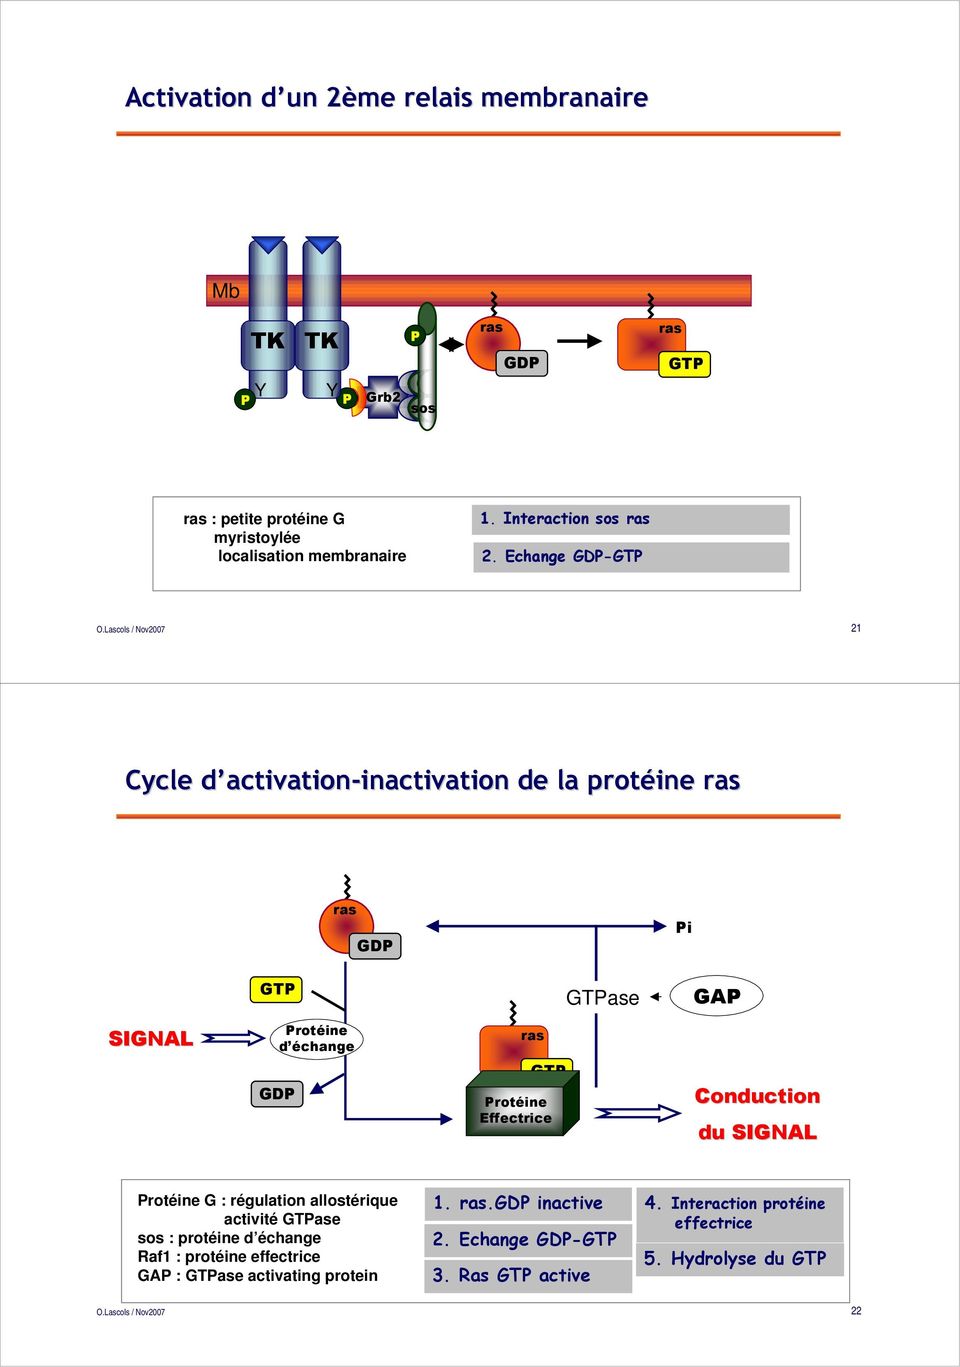 Echange GD-GT 21 Cycle d activationd activation-inactivation inactivation de la protéine ras ras GD i GT GTase GA SIGNAL rotéine d échange ras GD GT